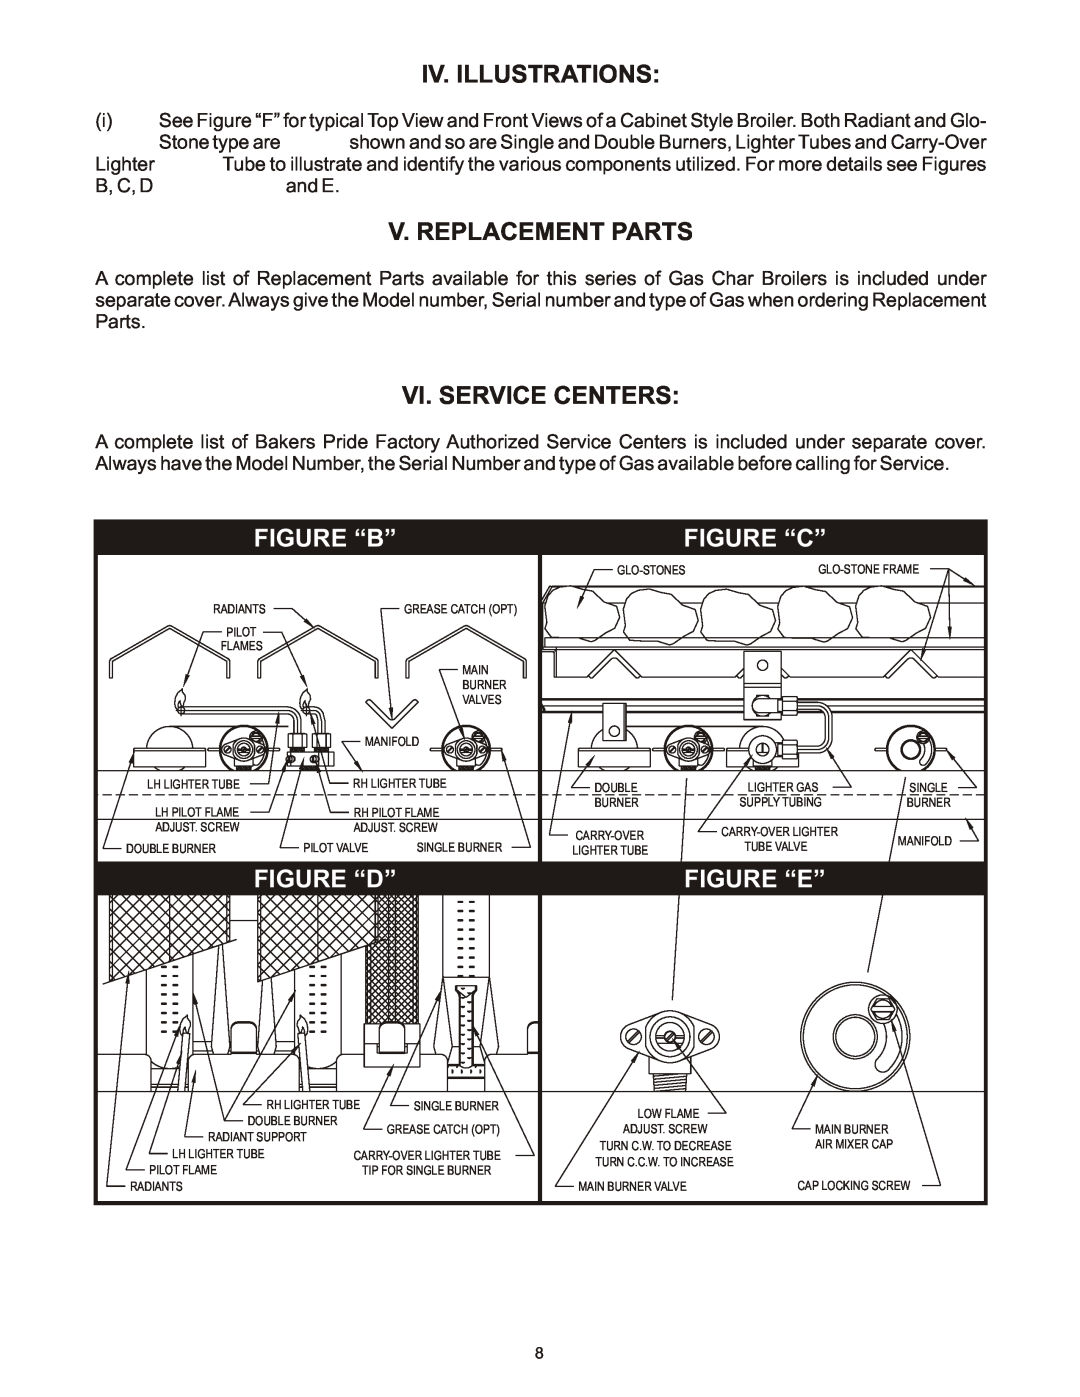 Bakers Pride Oven L Iv. Illustrations, V. Replacement Parts, Vi. Service Centers, Figure “B”, Figure “C”, Figure “D” 